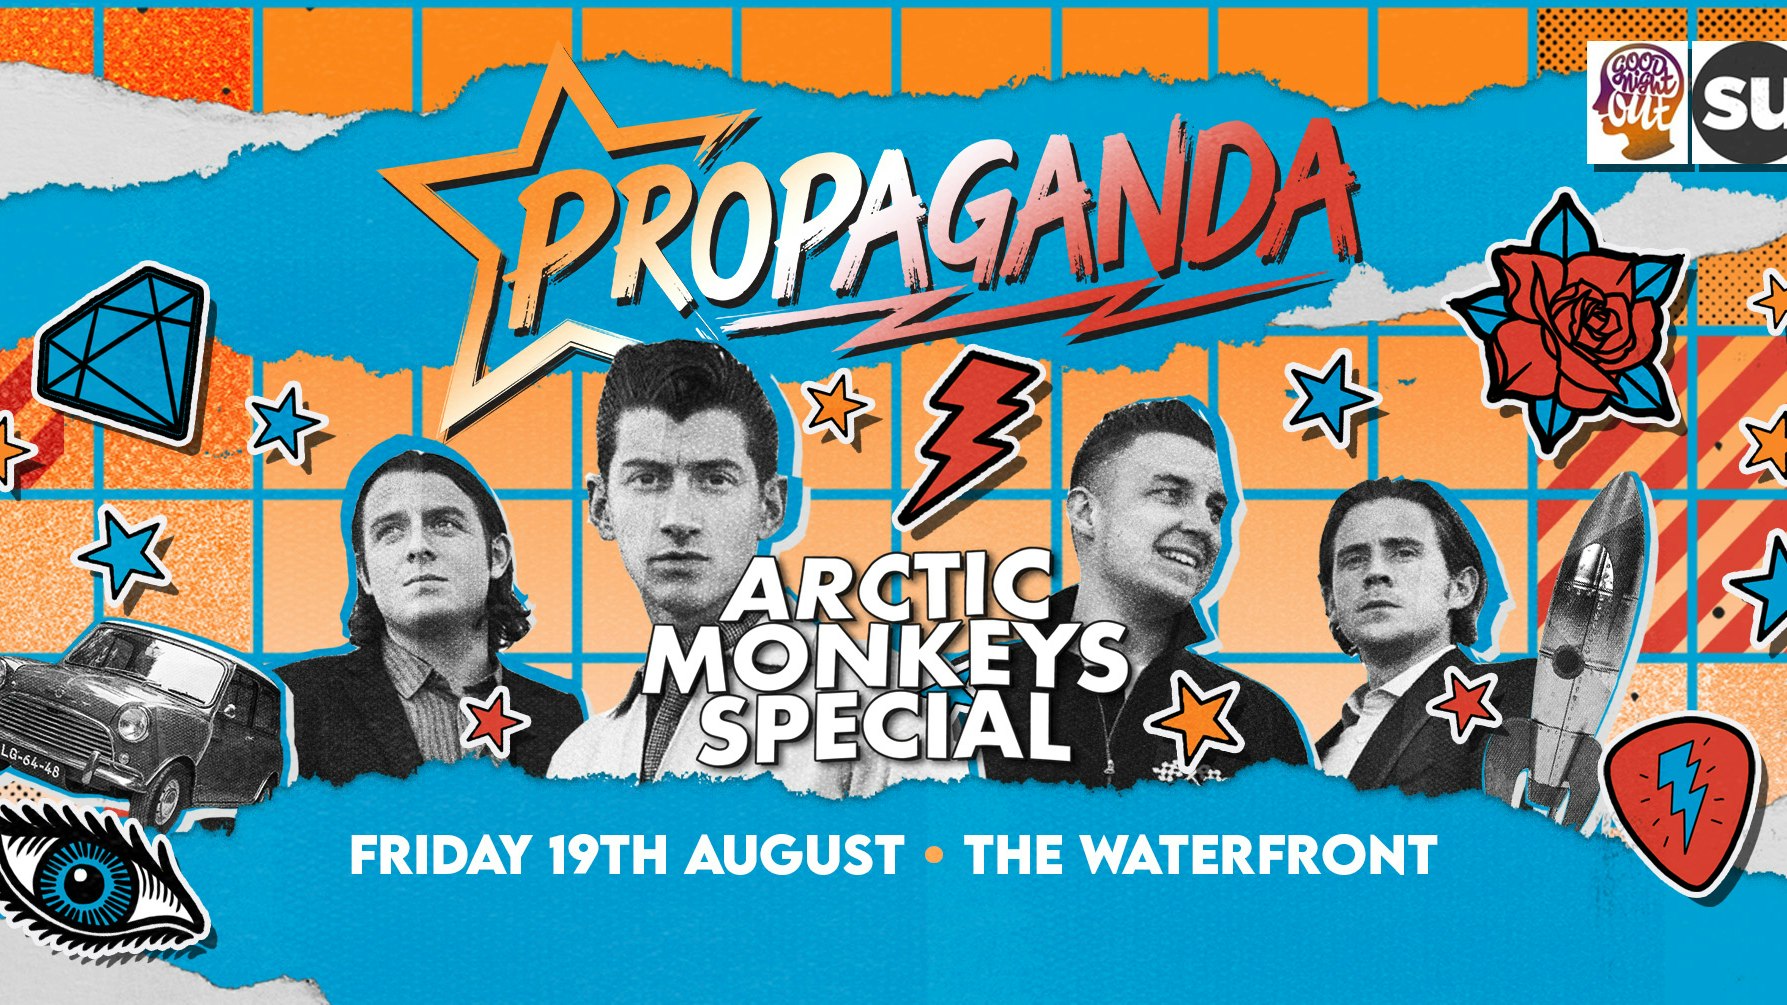 Propaganda Norwich – Arctic Monkeys Special